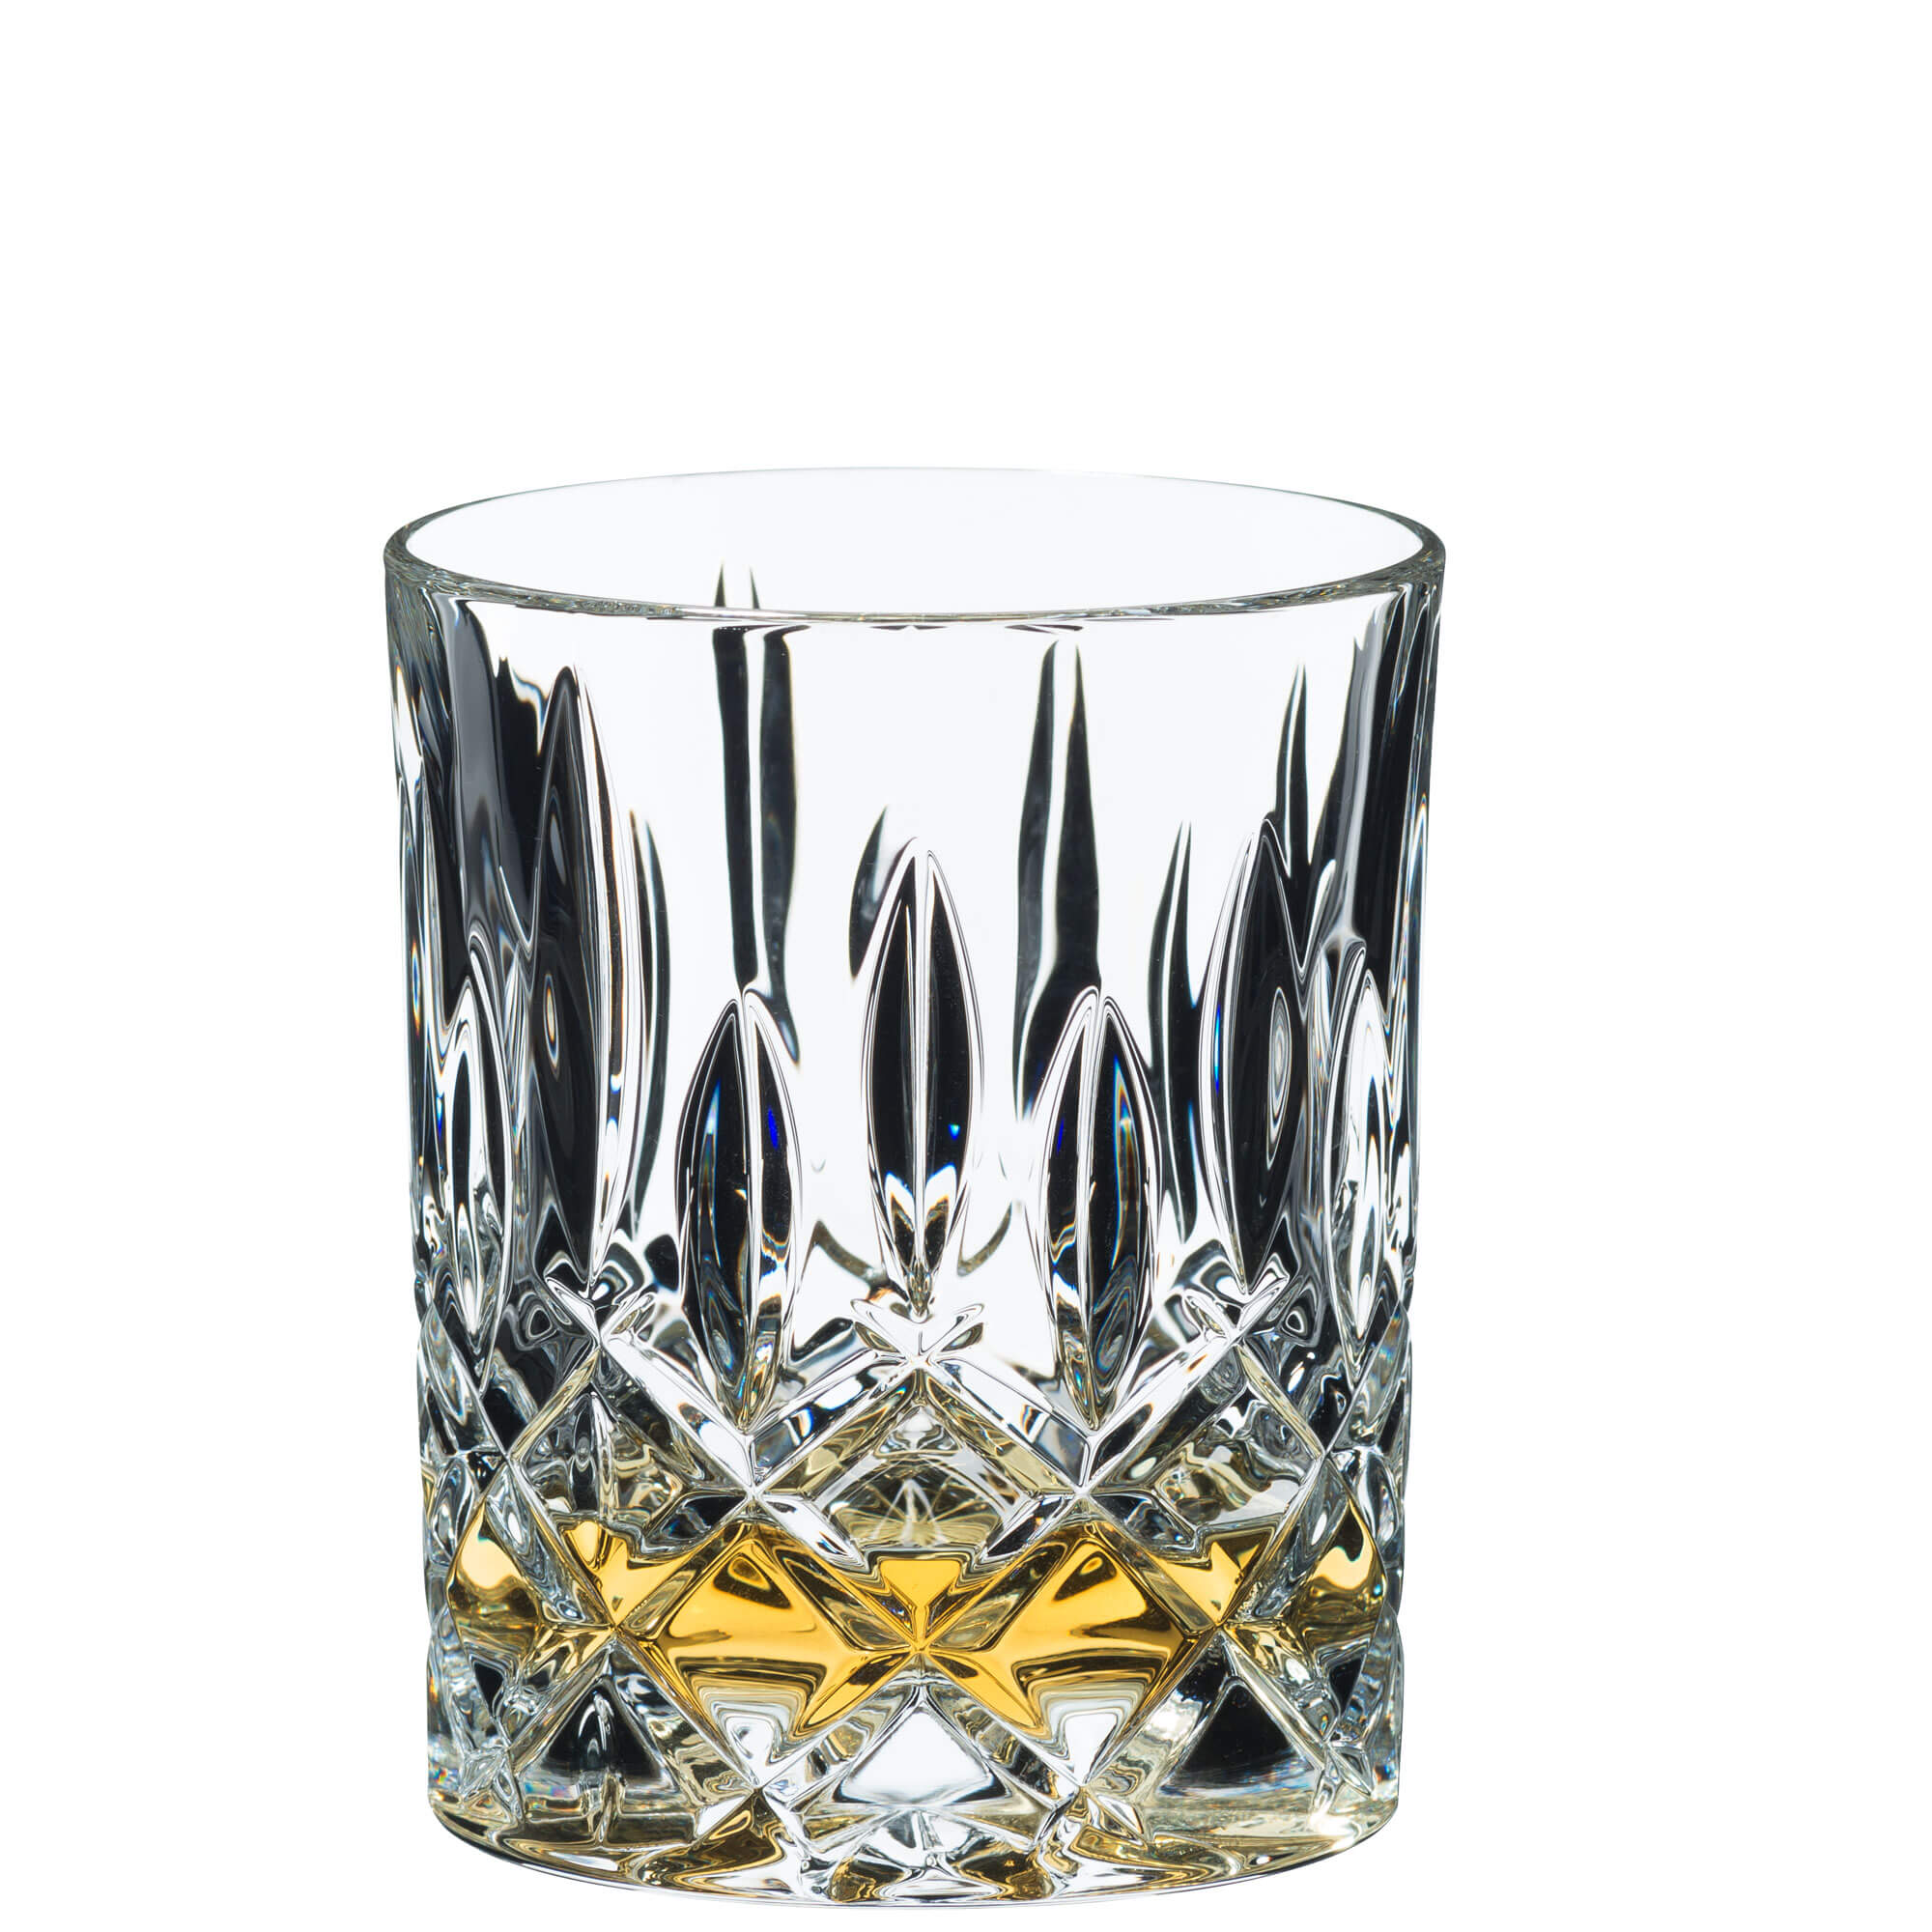 Whiskyglas Spey, Riedel - 295ml (2 Stk.)